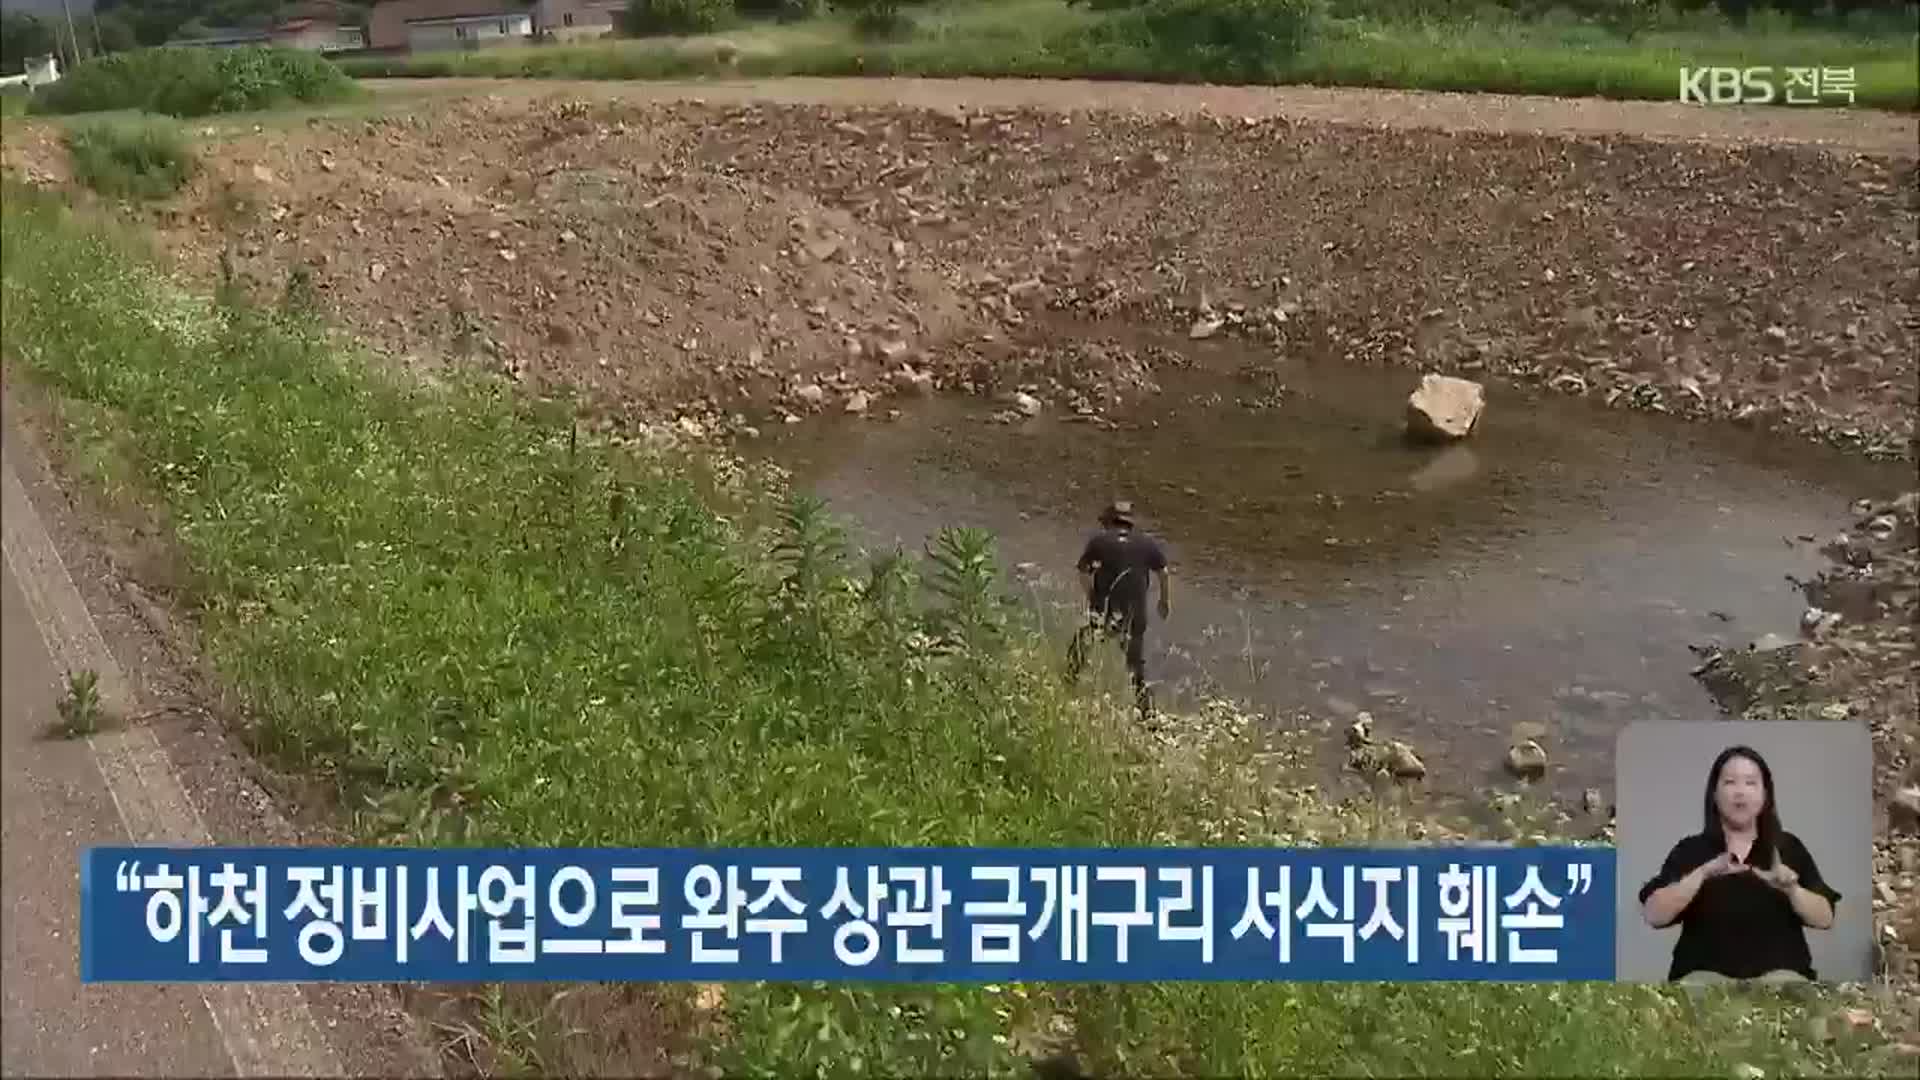 “하천 정비사업으로 완주 상관 금개구리 서식지 훼손”